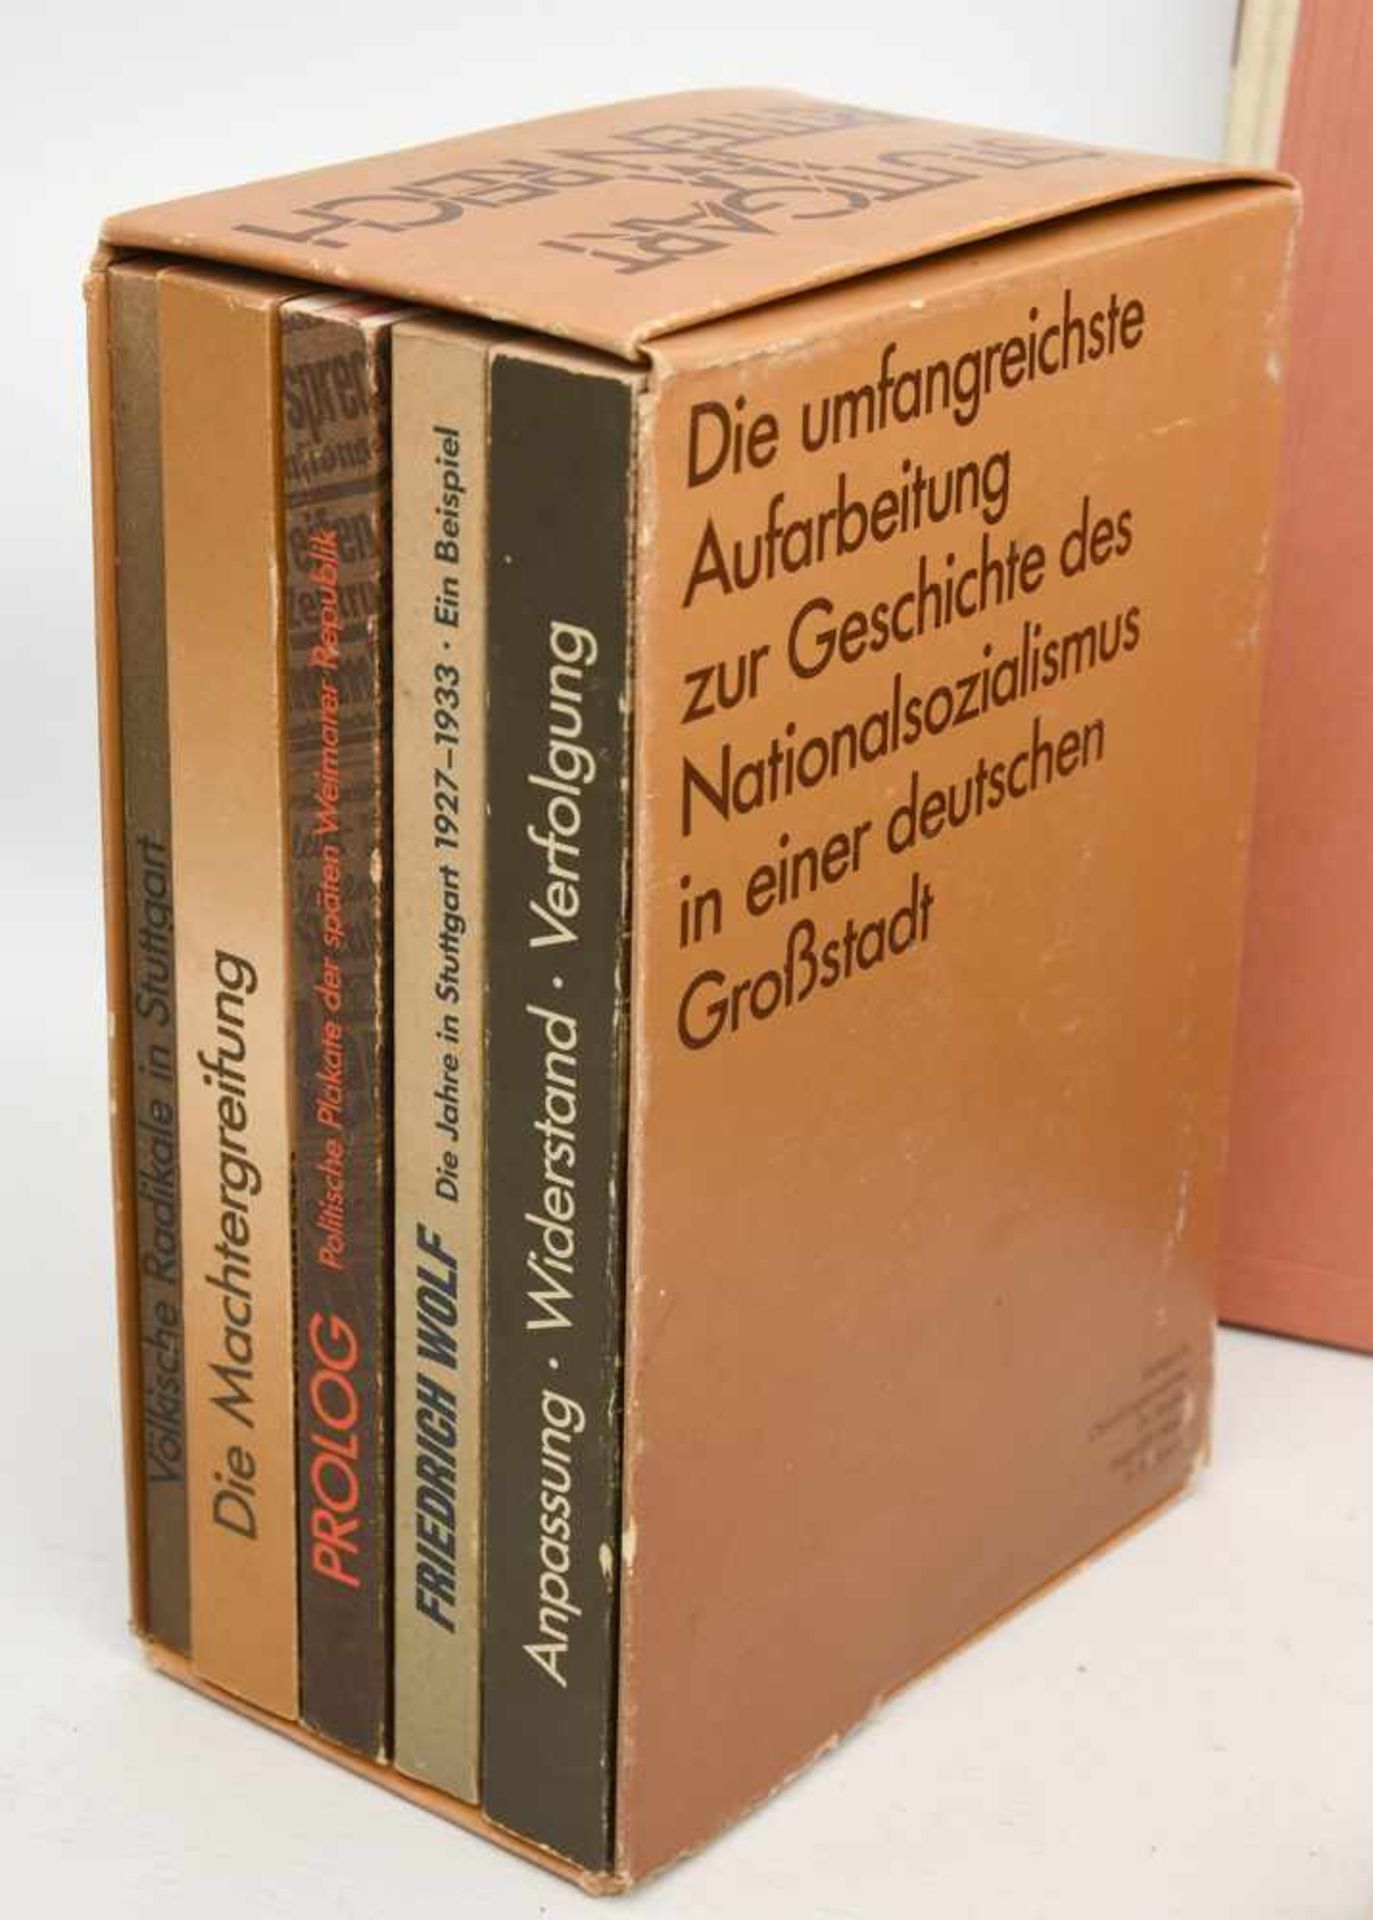 BÜCHER-KONVOLUT "STUTTGART", diverse Sachbücher/Monografien, Deutsches Reich/BRD 1889- 1984 Konvolut - Bild 6 aus 10